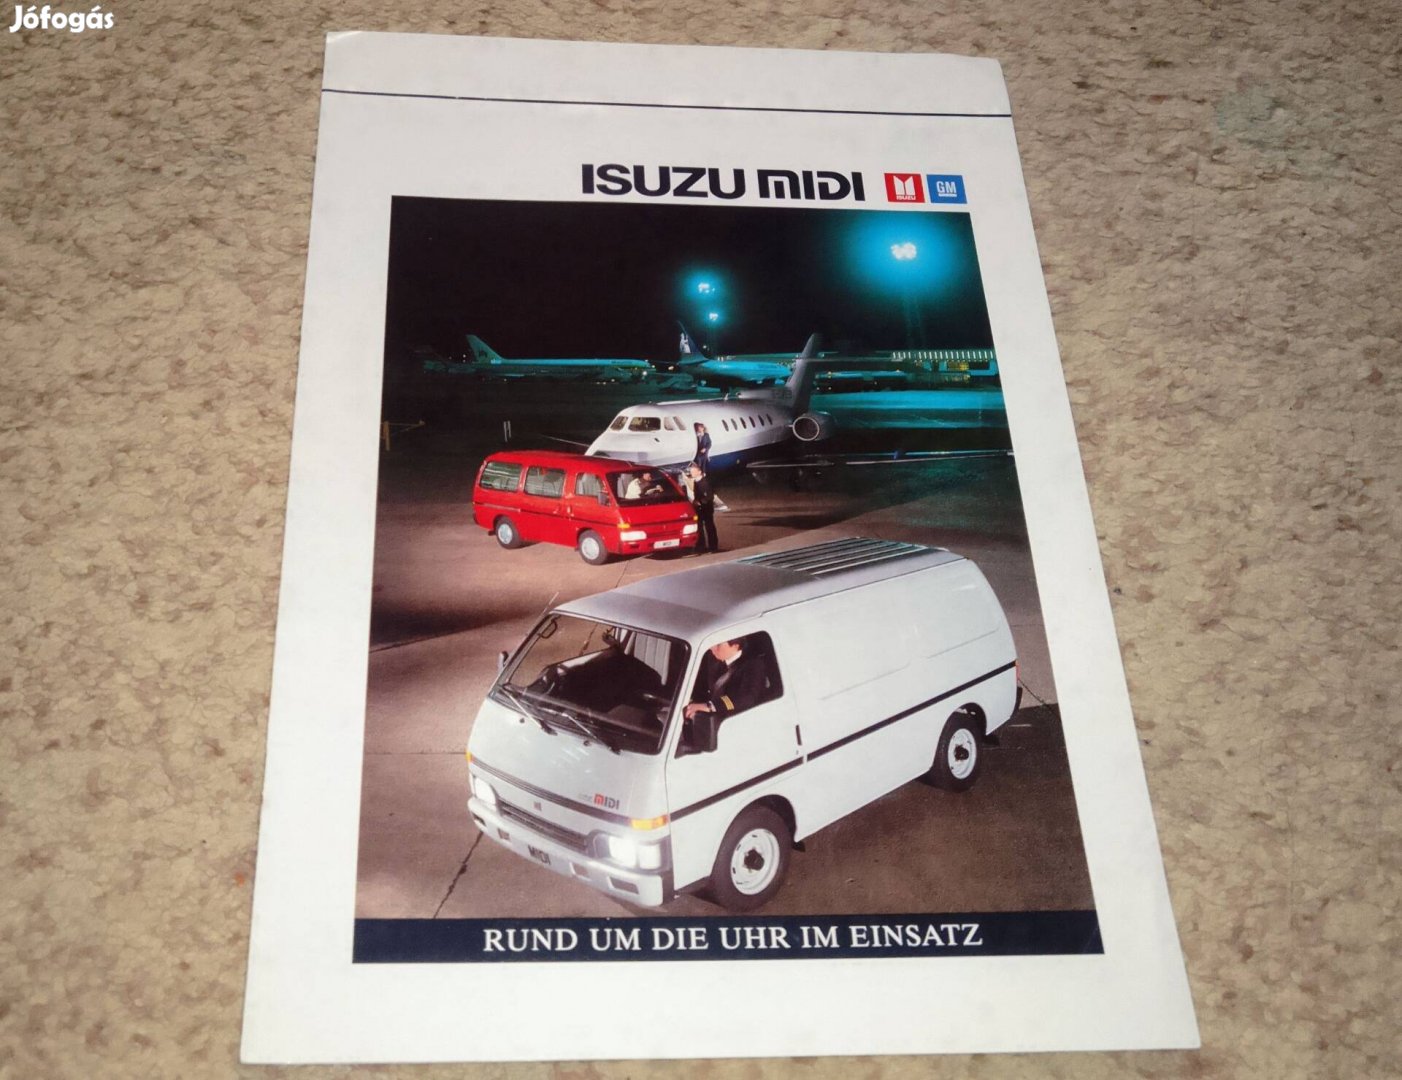 Isuzu Midi furgon (1989) prospektus, katalógus.